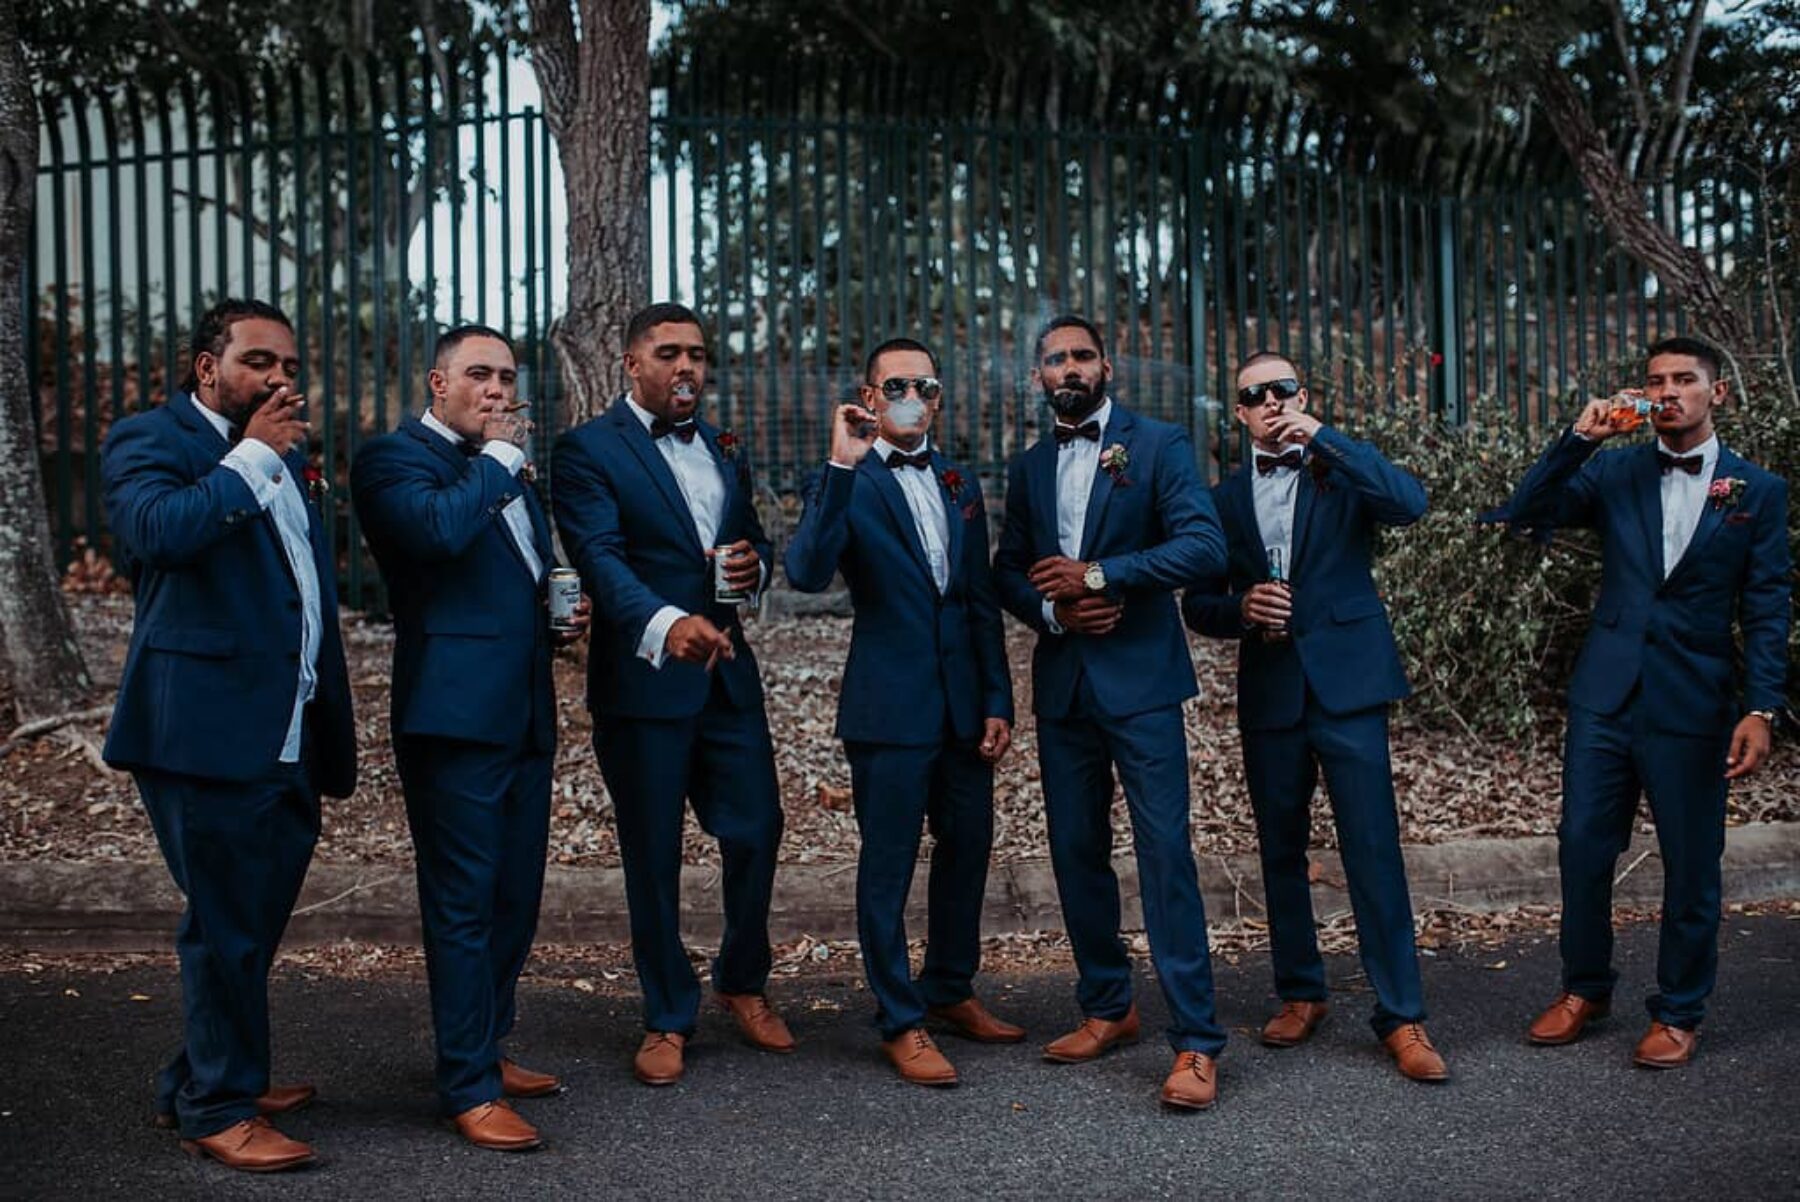 cigar-smoking groomsmen